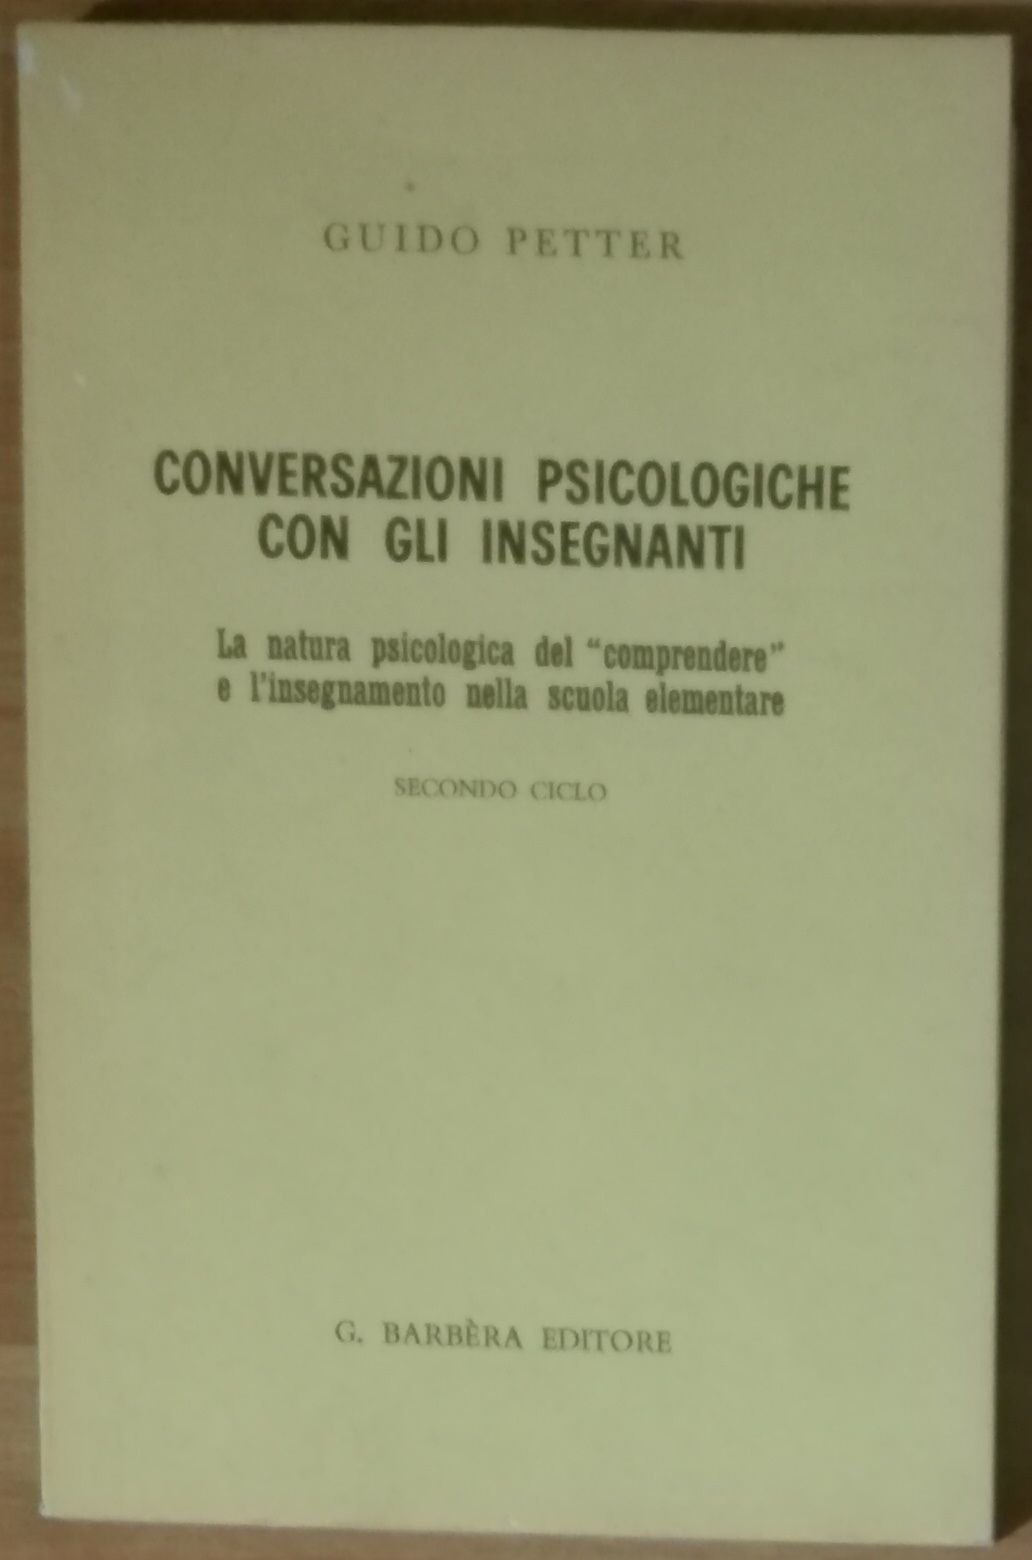 Conversazioni psicologiche con gli insegnanti - Guido Petter - Barbera,1967 - A